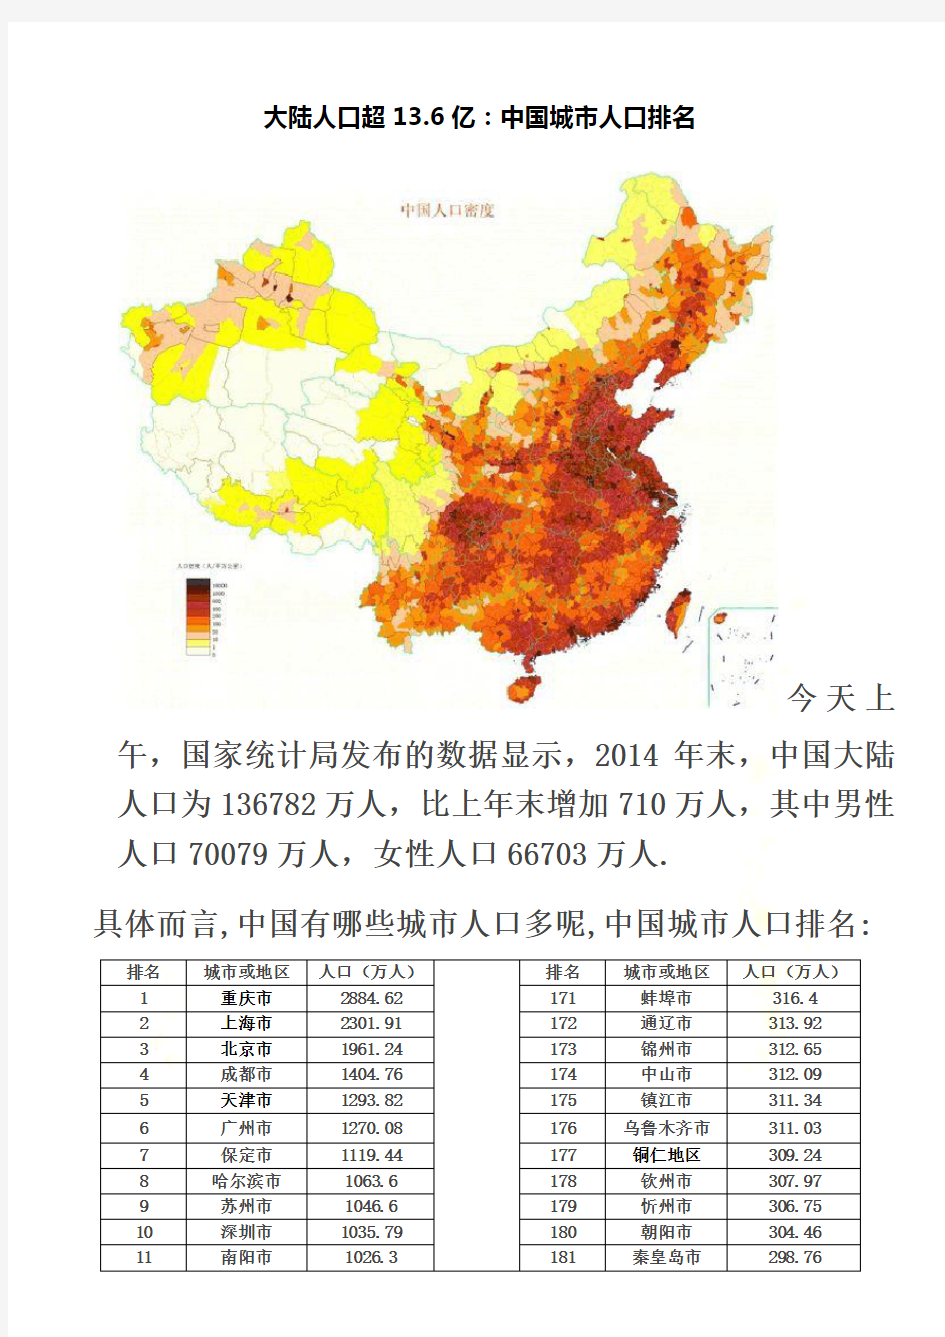 2015年最新中国城市人口排名